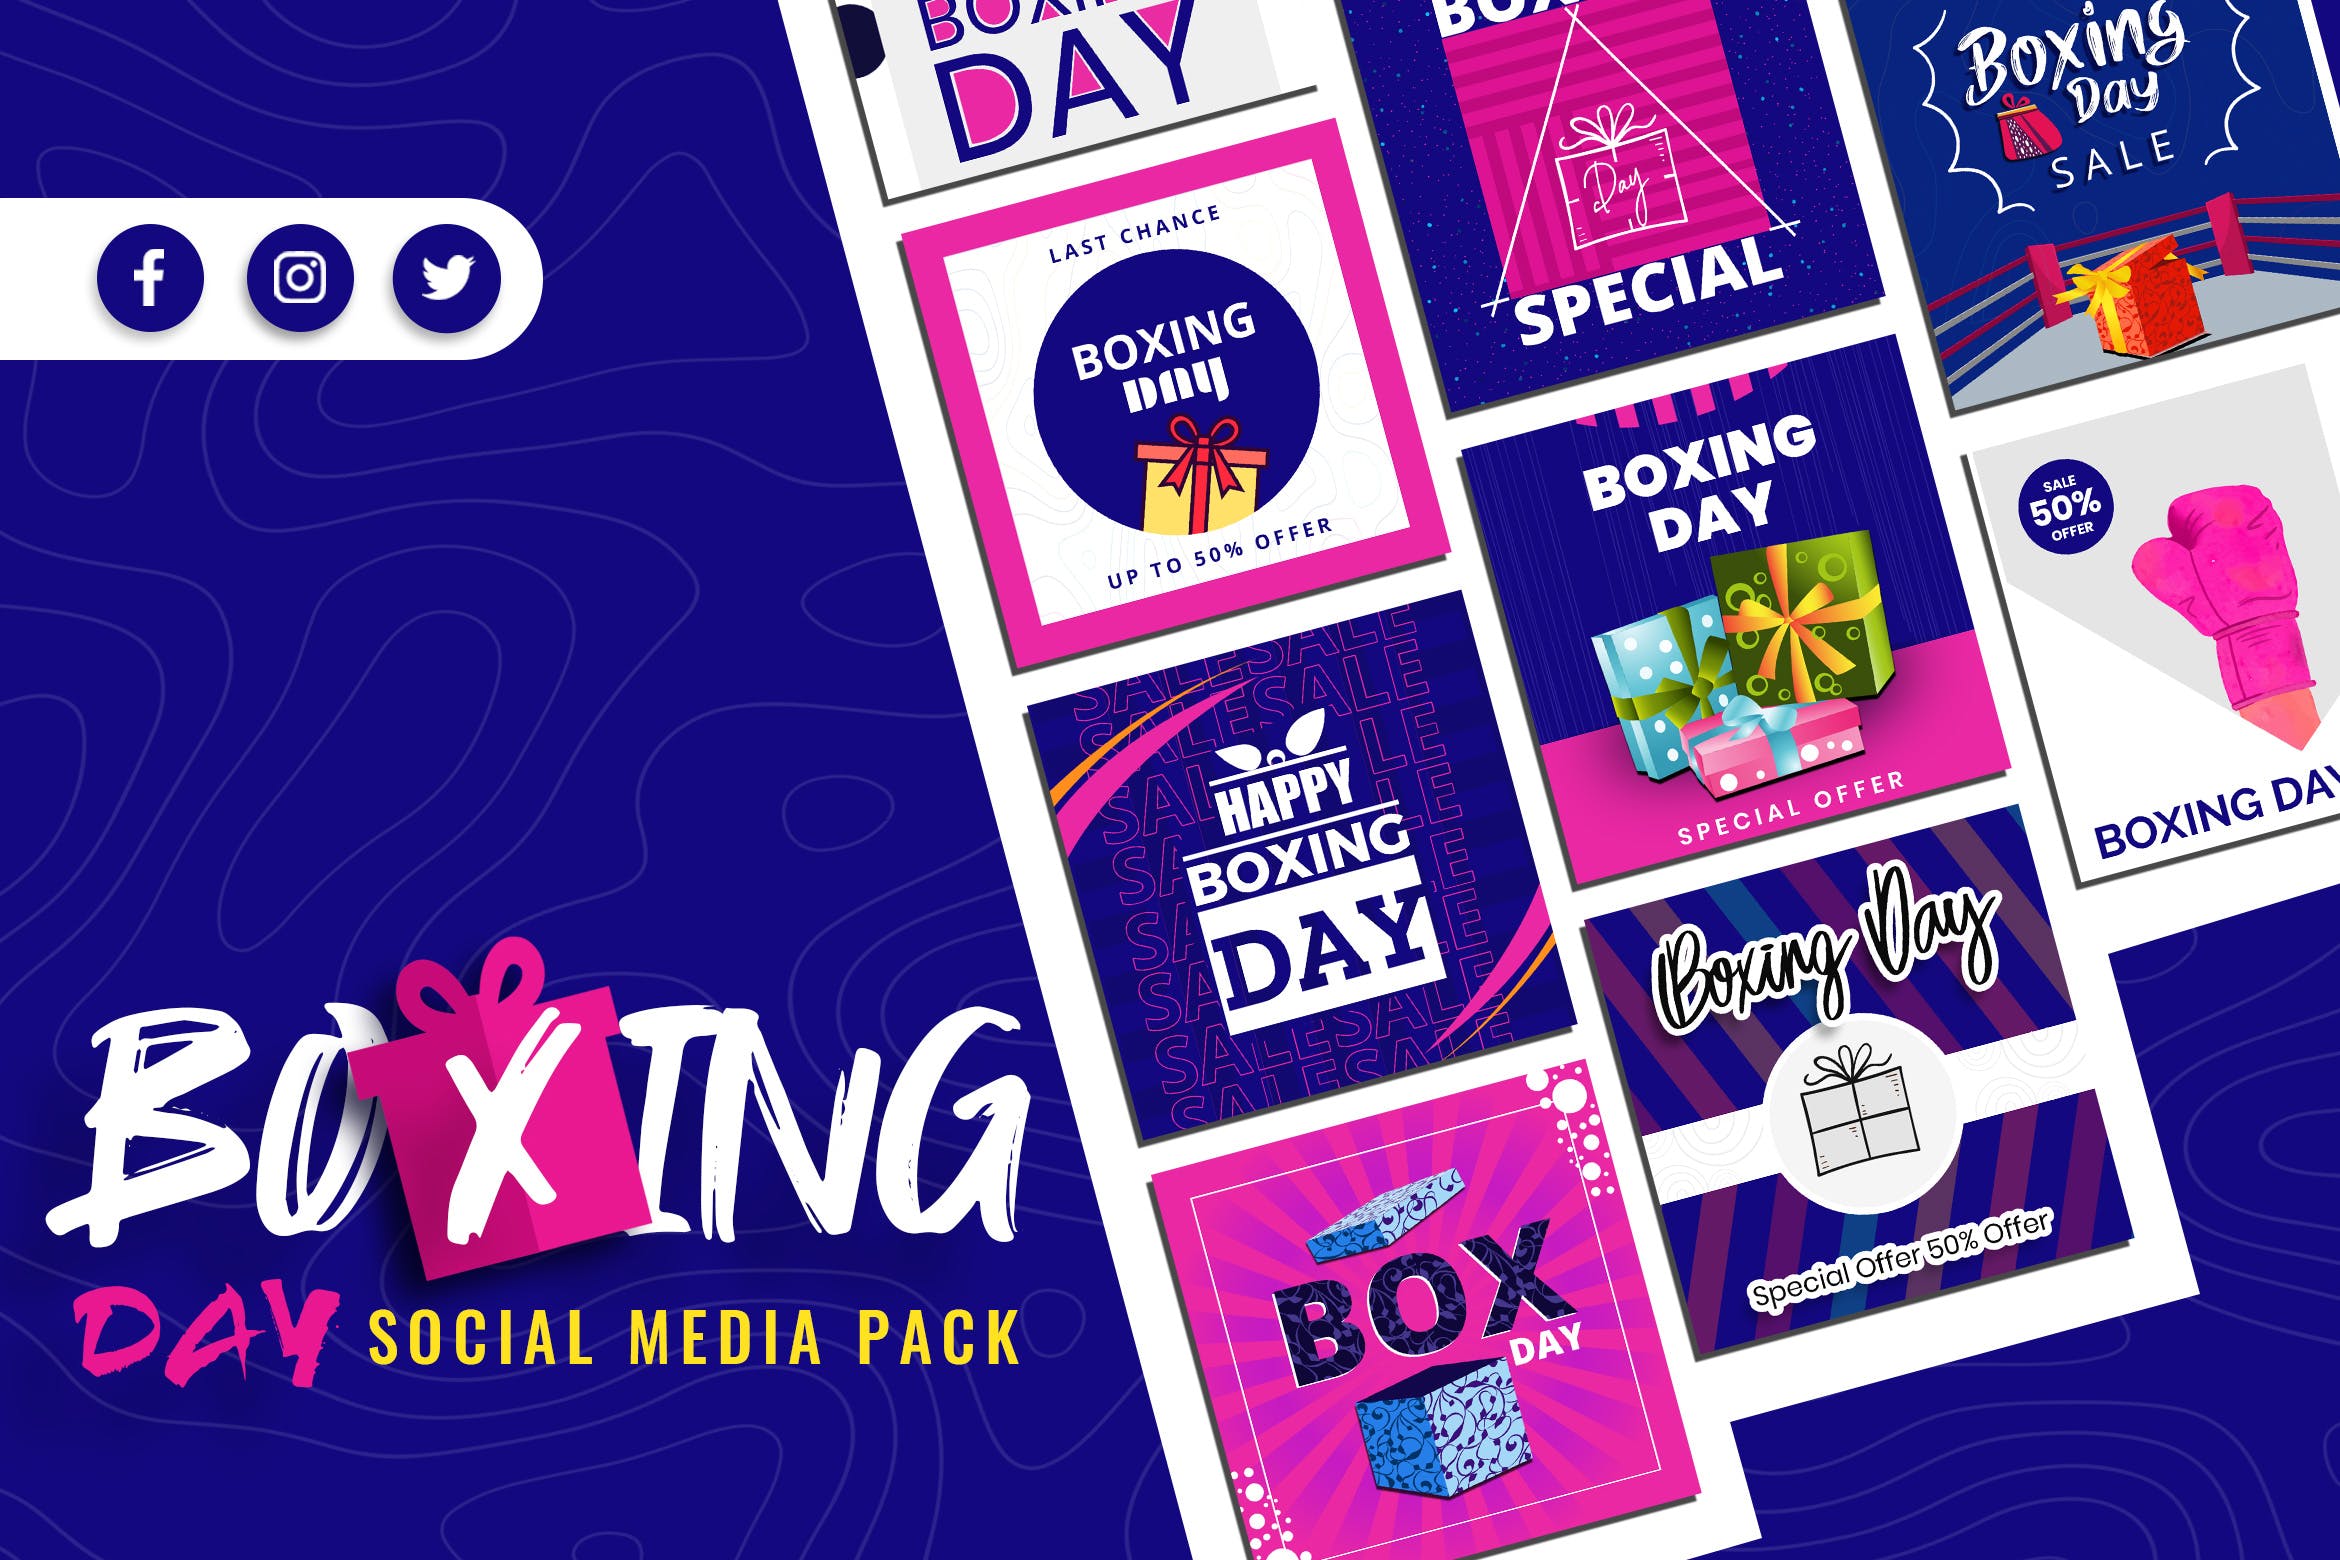 礼品日主题社交媒体设计素材包 Boxing Day Social Media Pack插图